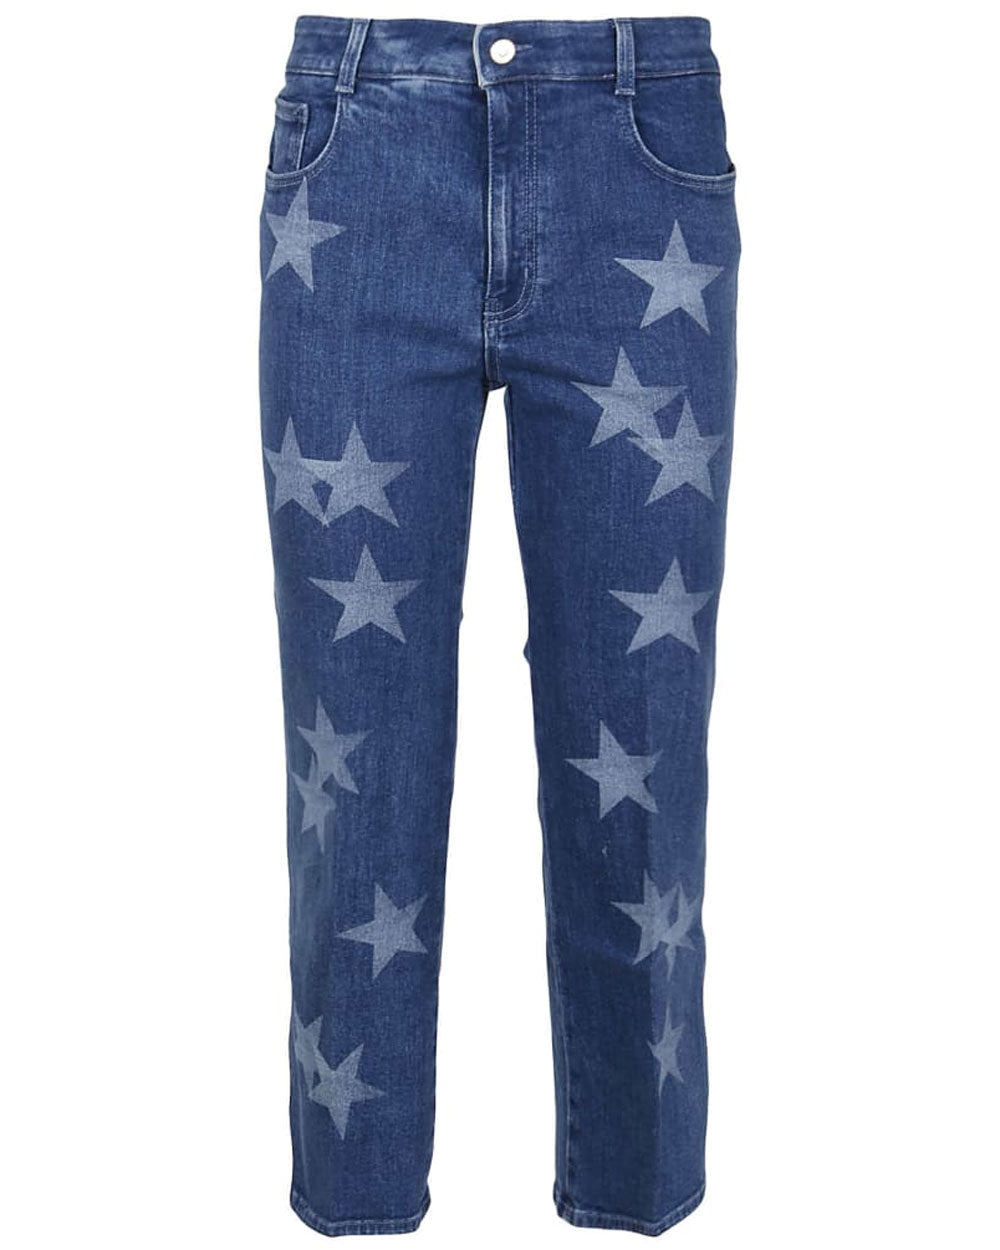 Medium Blue Star Jean